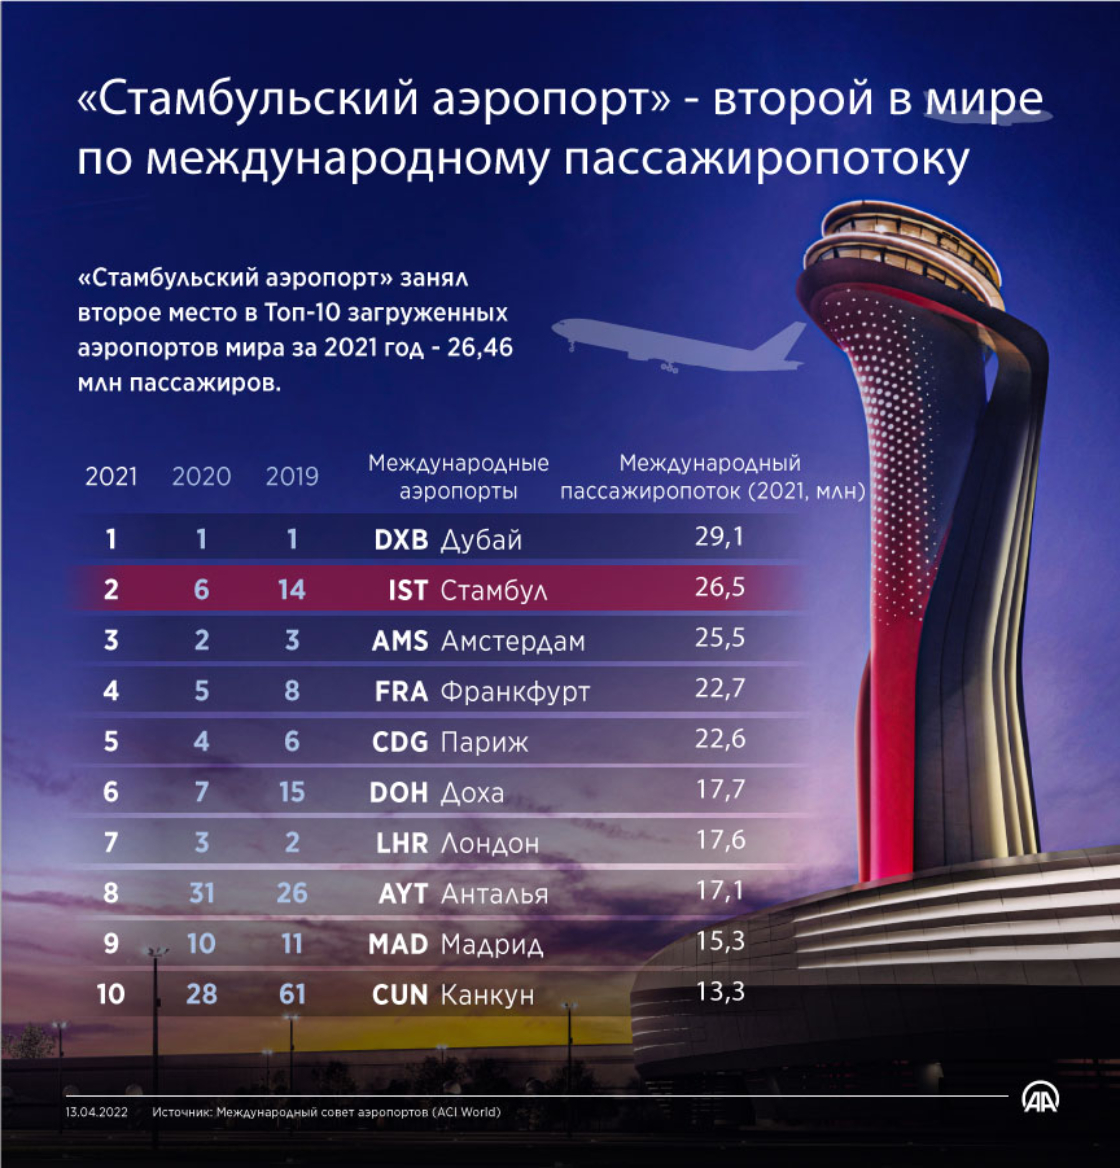 «Стамбульский аэропорт» — второй в мире по международному пассажиропотоку